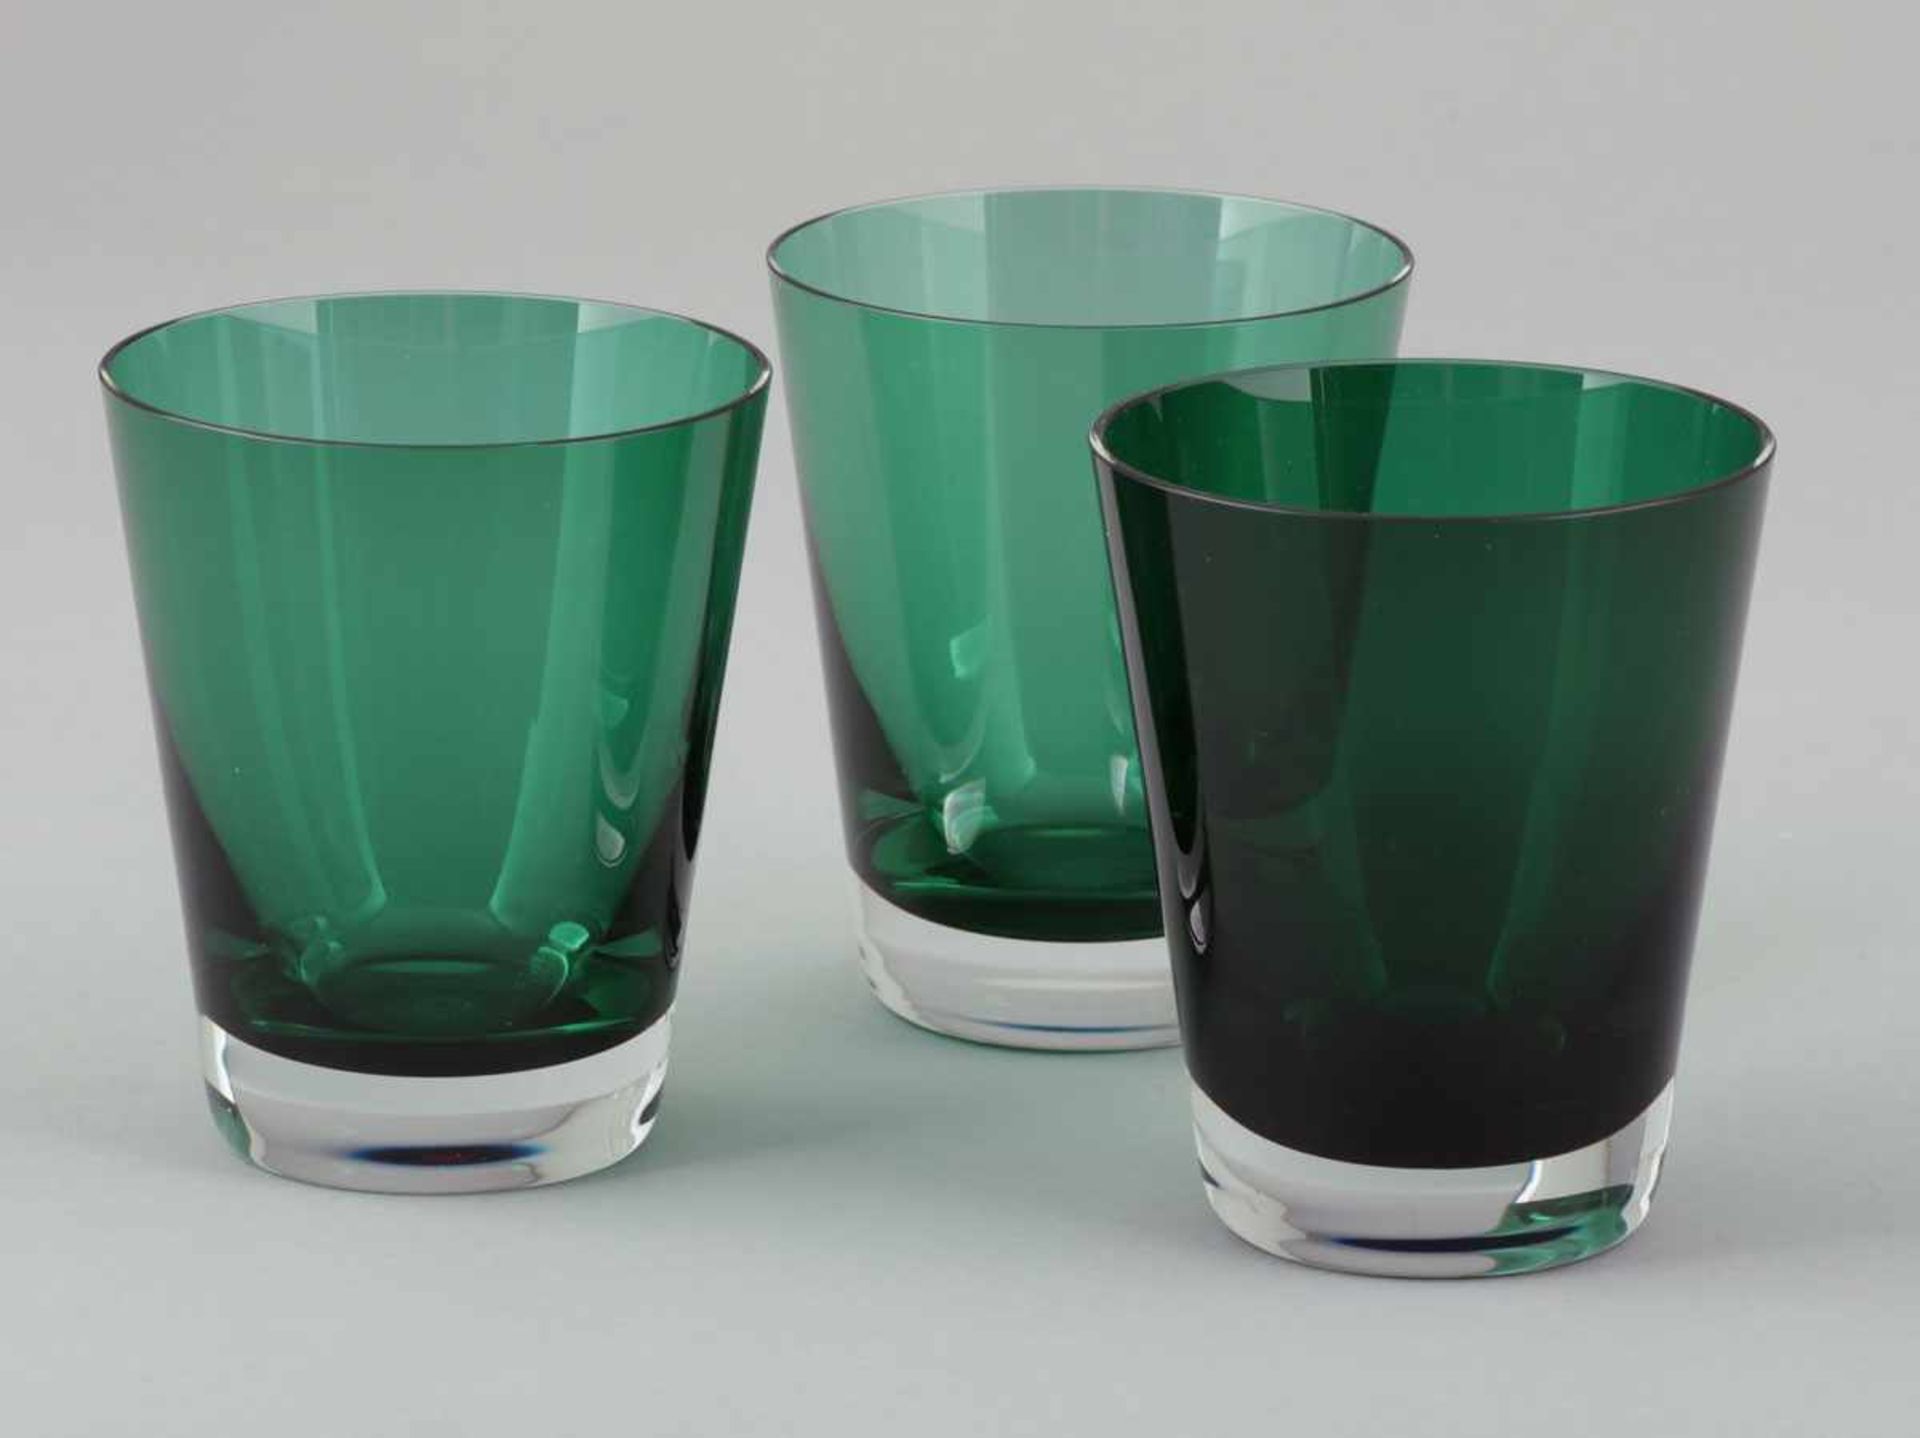 3 Becher MosaiqueBaccarat. Farbloses Glas mit grünem Innenüberfang. Unter dem Stand bez.: Baccarat